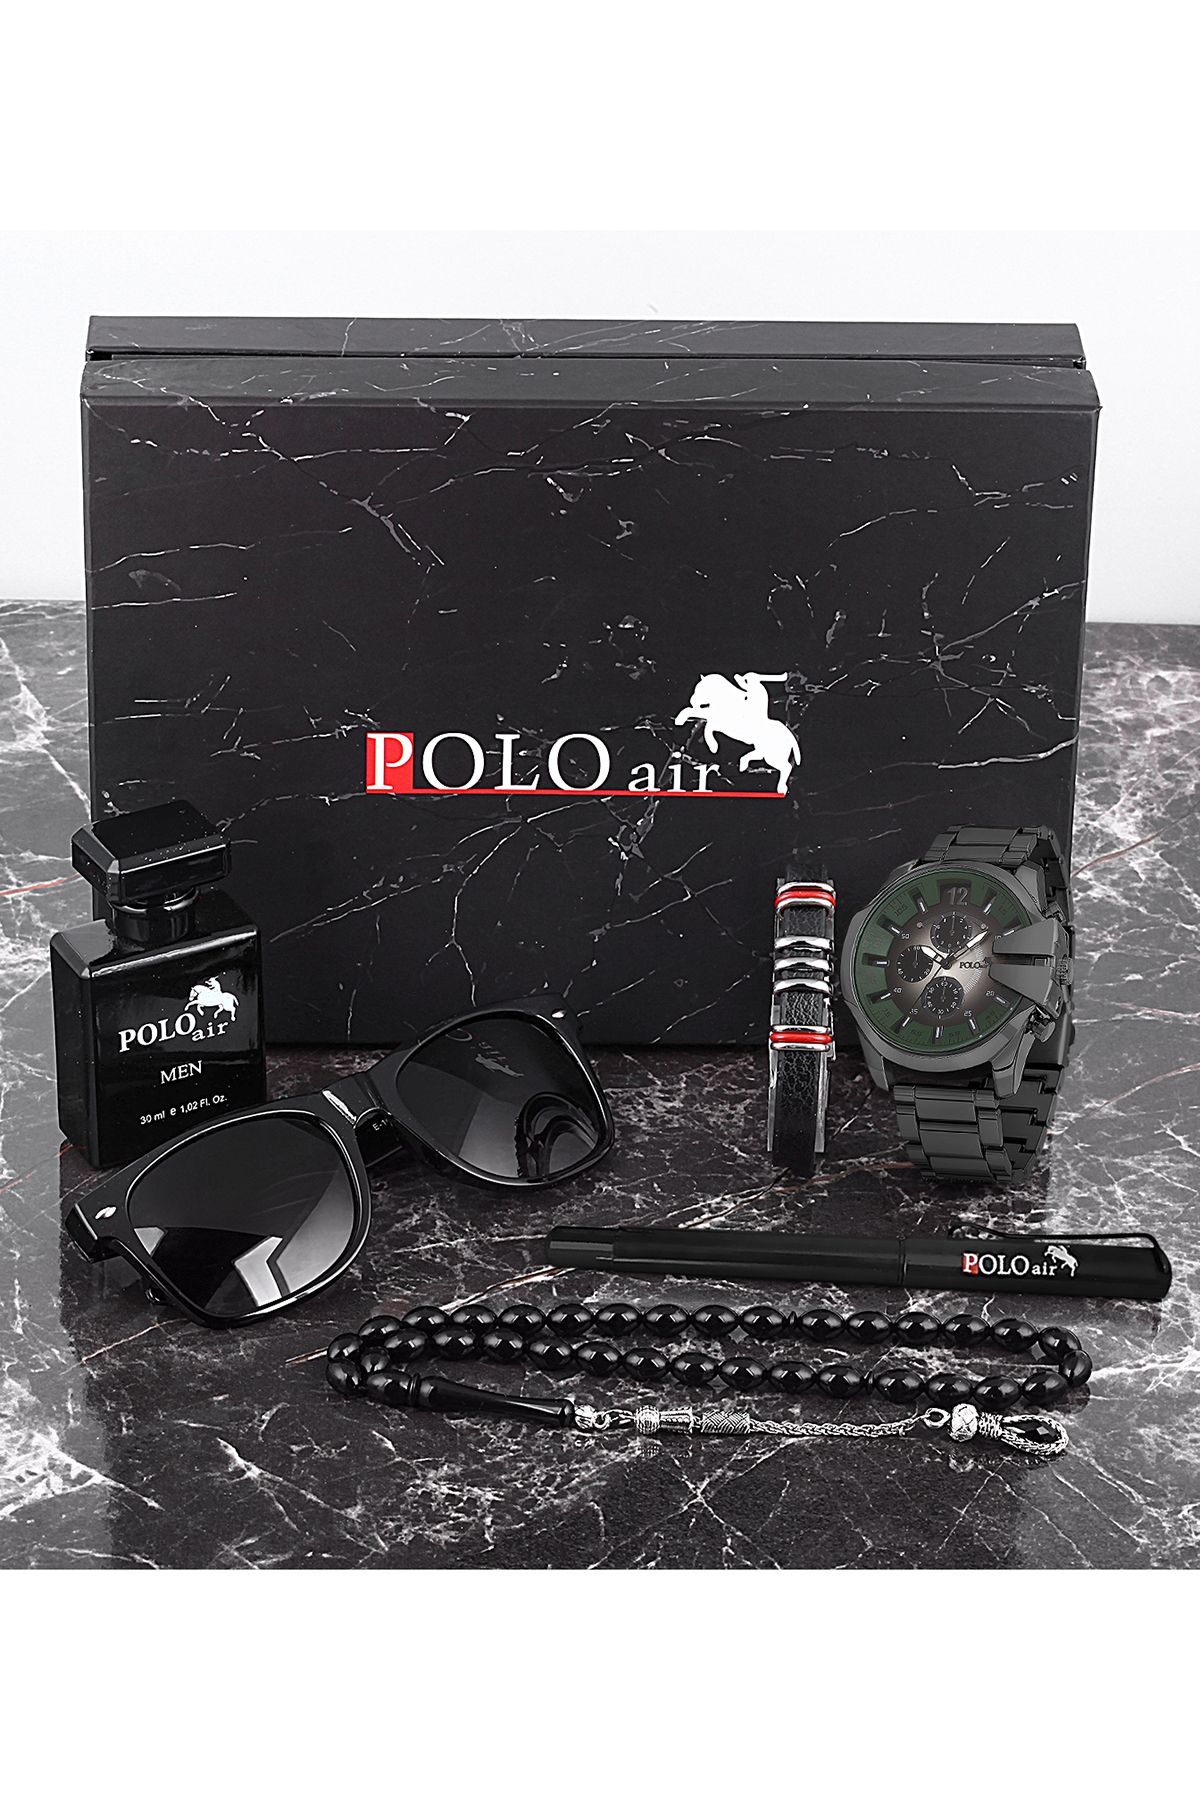 polo air Erkek Set Saat Gözlük Parfüm Tesbih Kalem Bileklik Özel Kutulu Siyah-Yeşil Renk